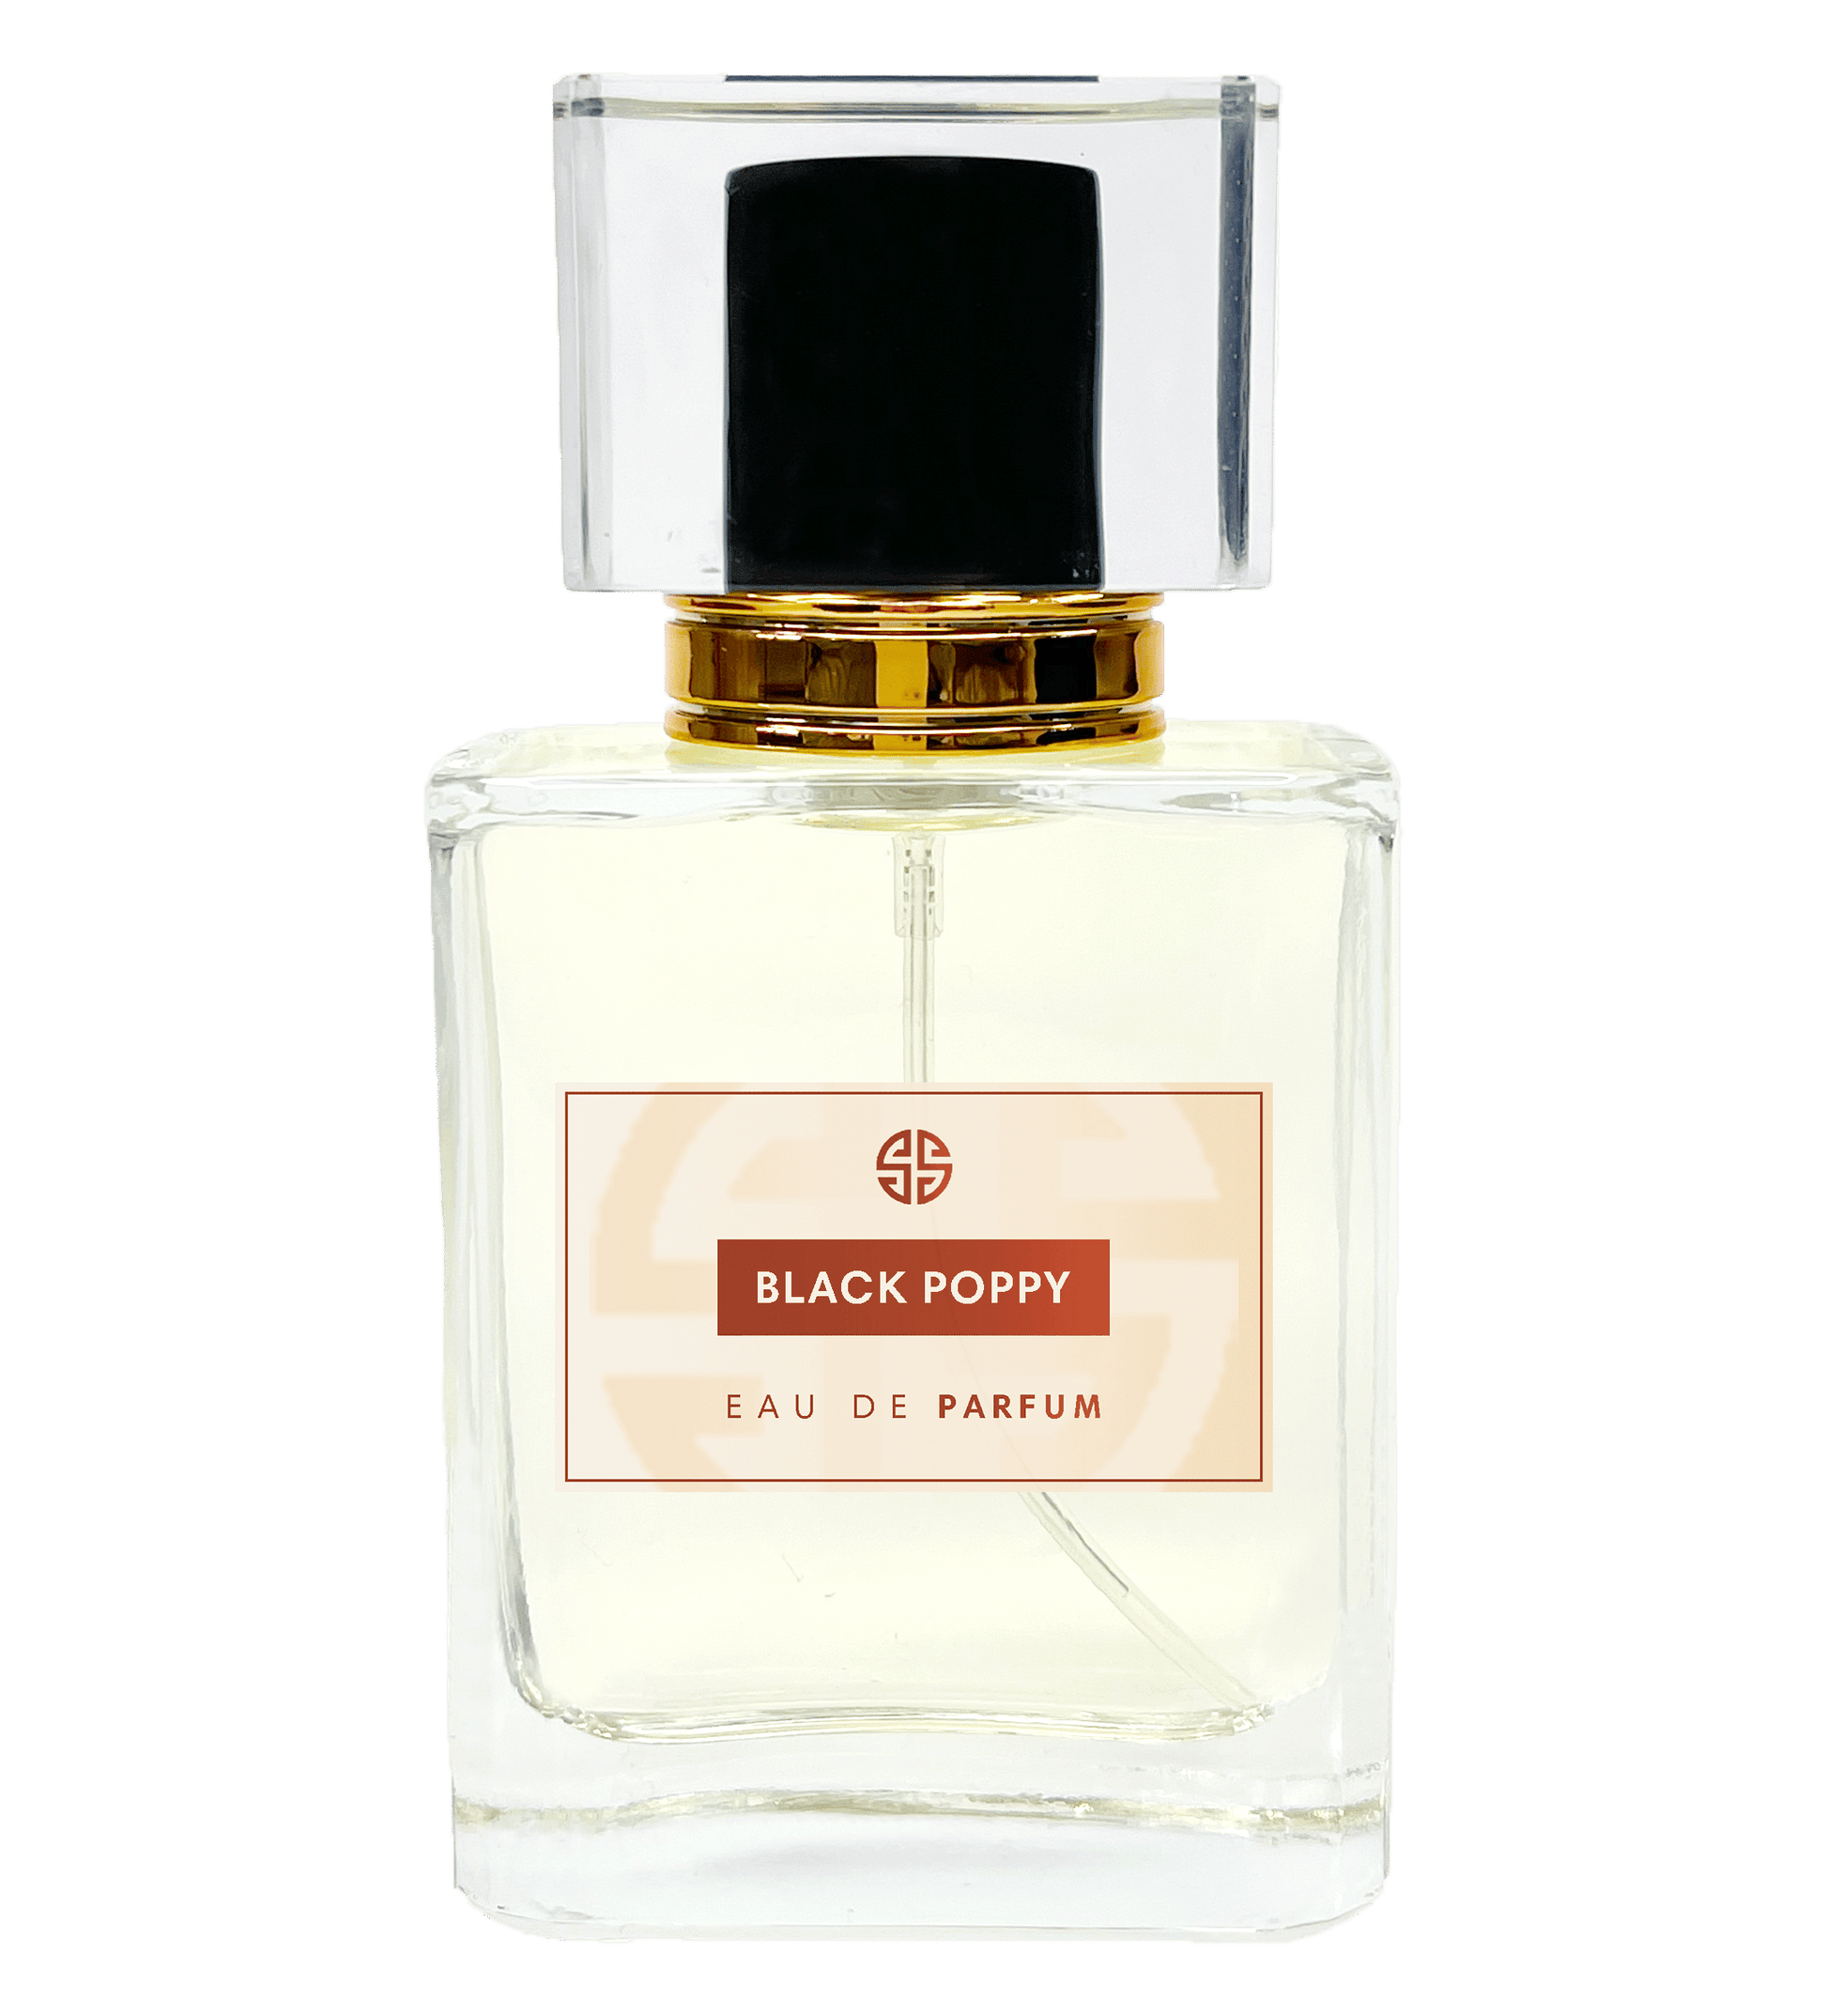 Black Opium parfum - Similar Scent BLACK POPPY - undefined